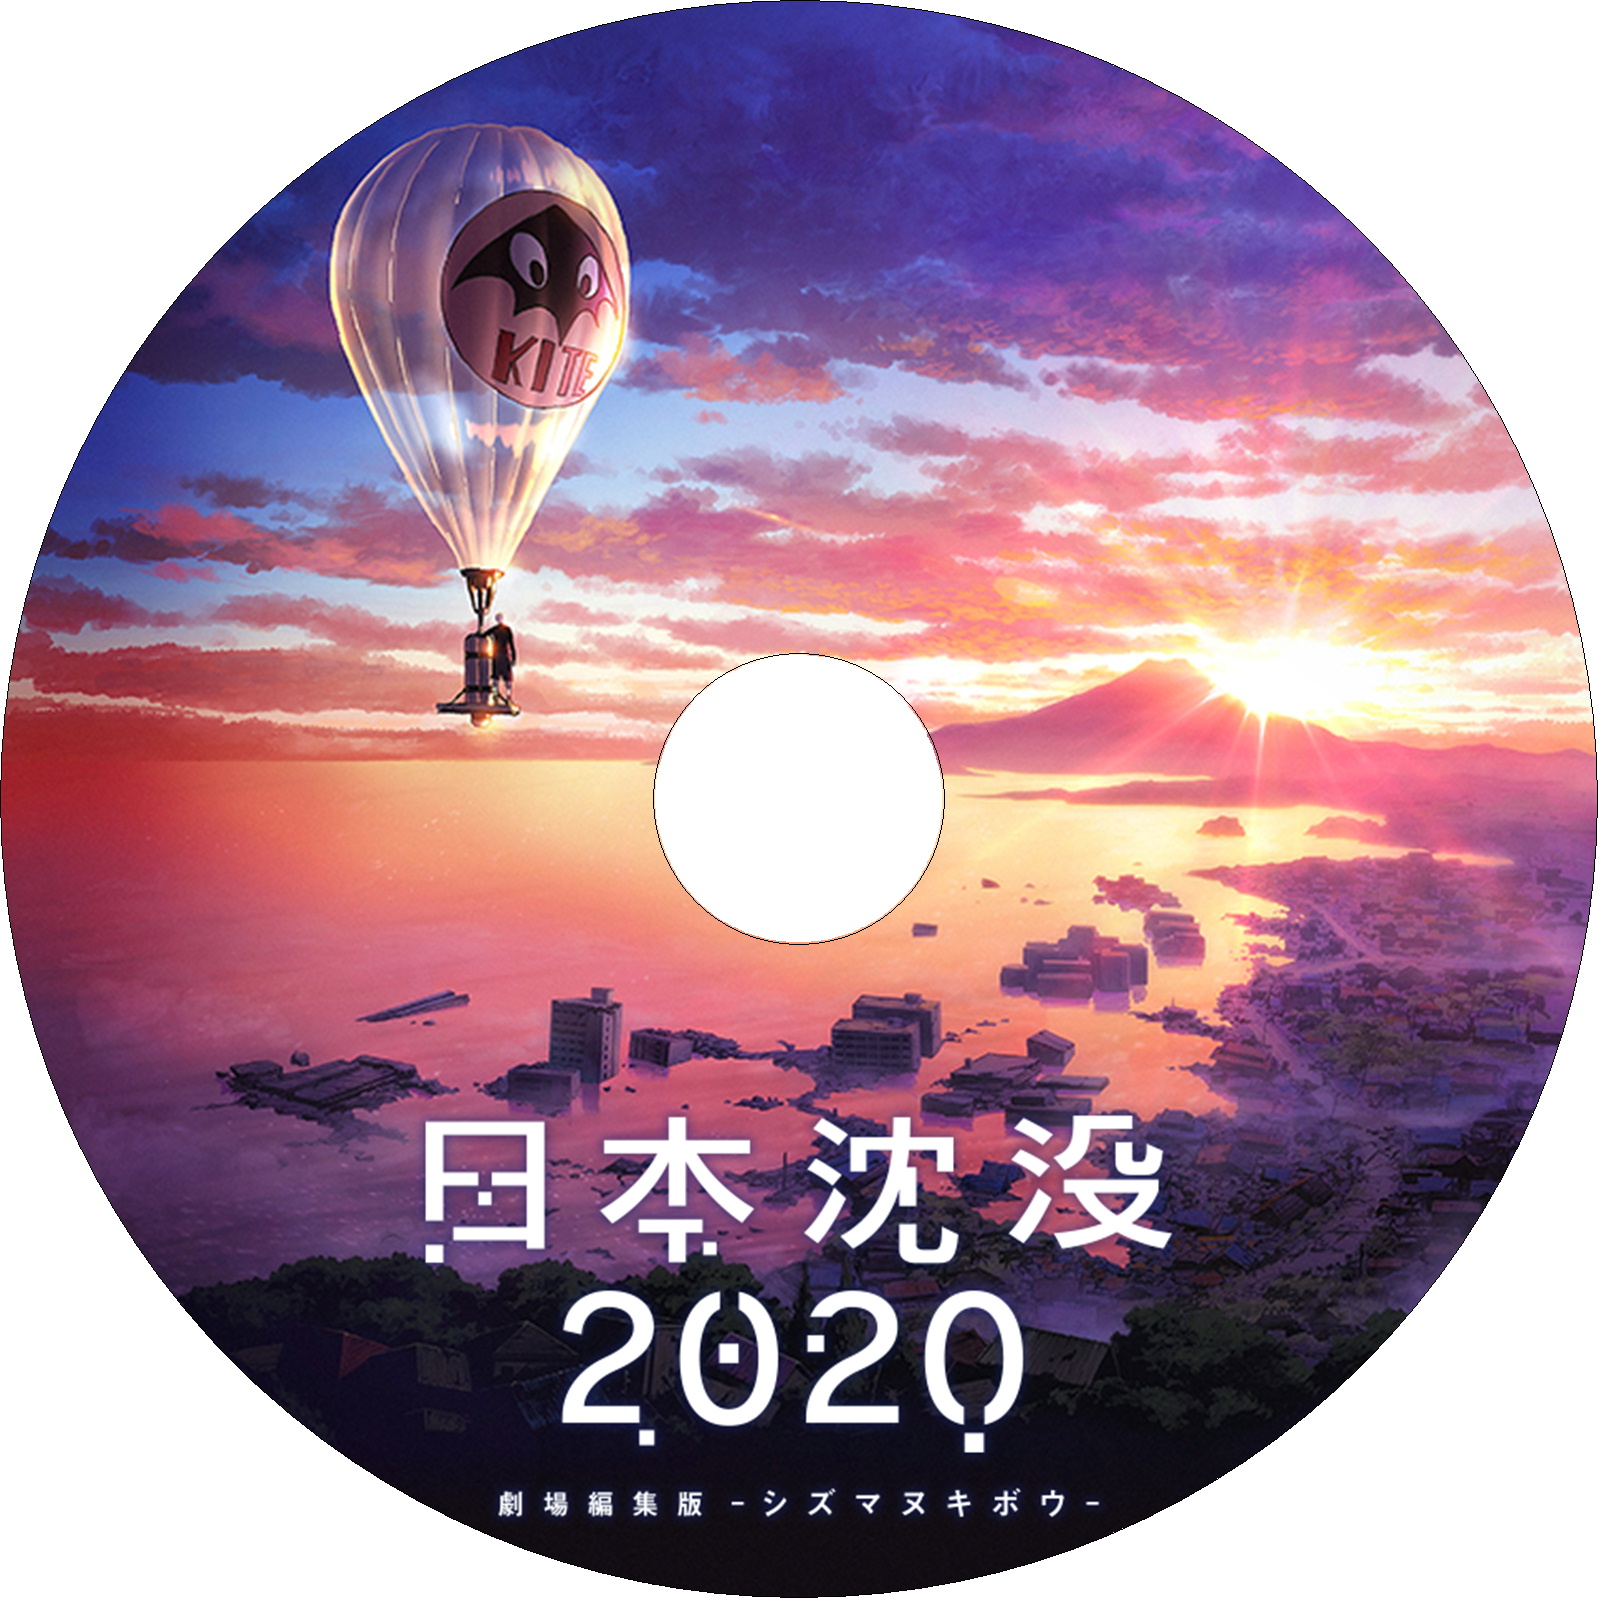 日本沈没2020 劇場編集版 -シズマヌキボウ-　ラベル